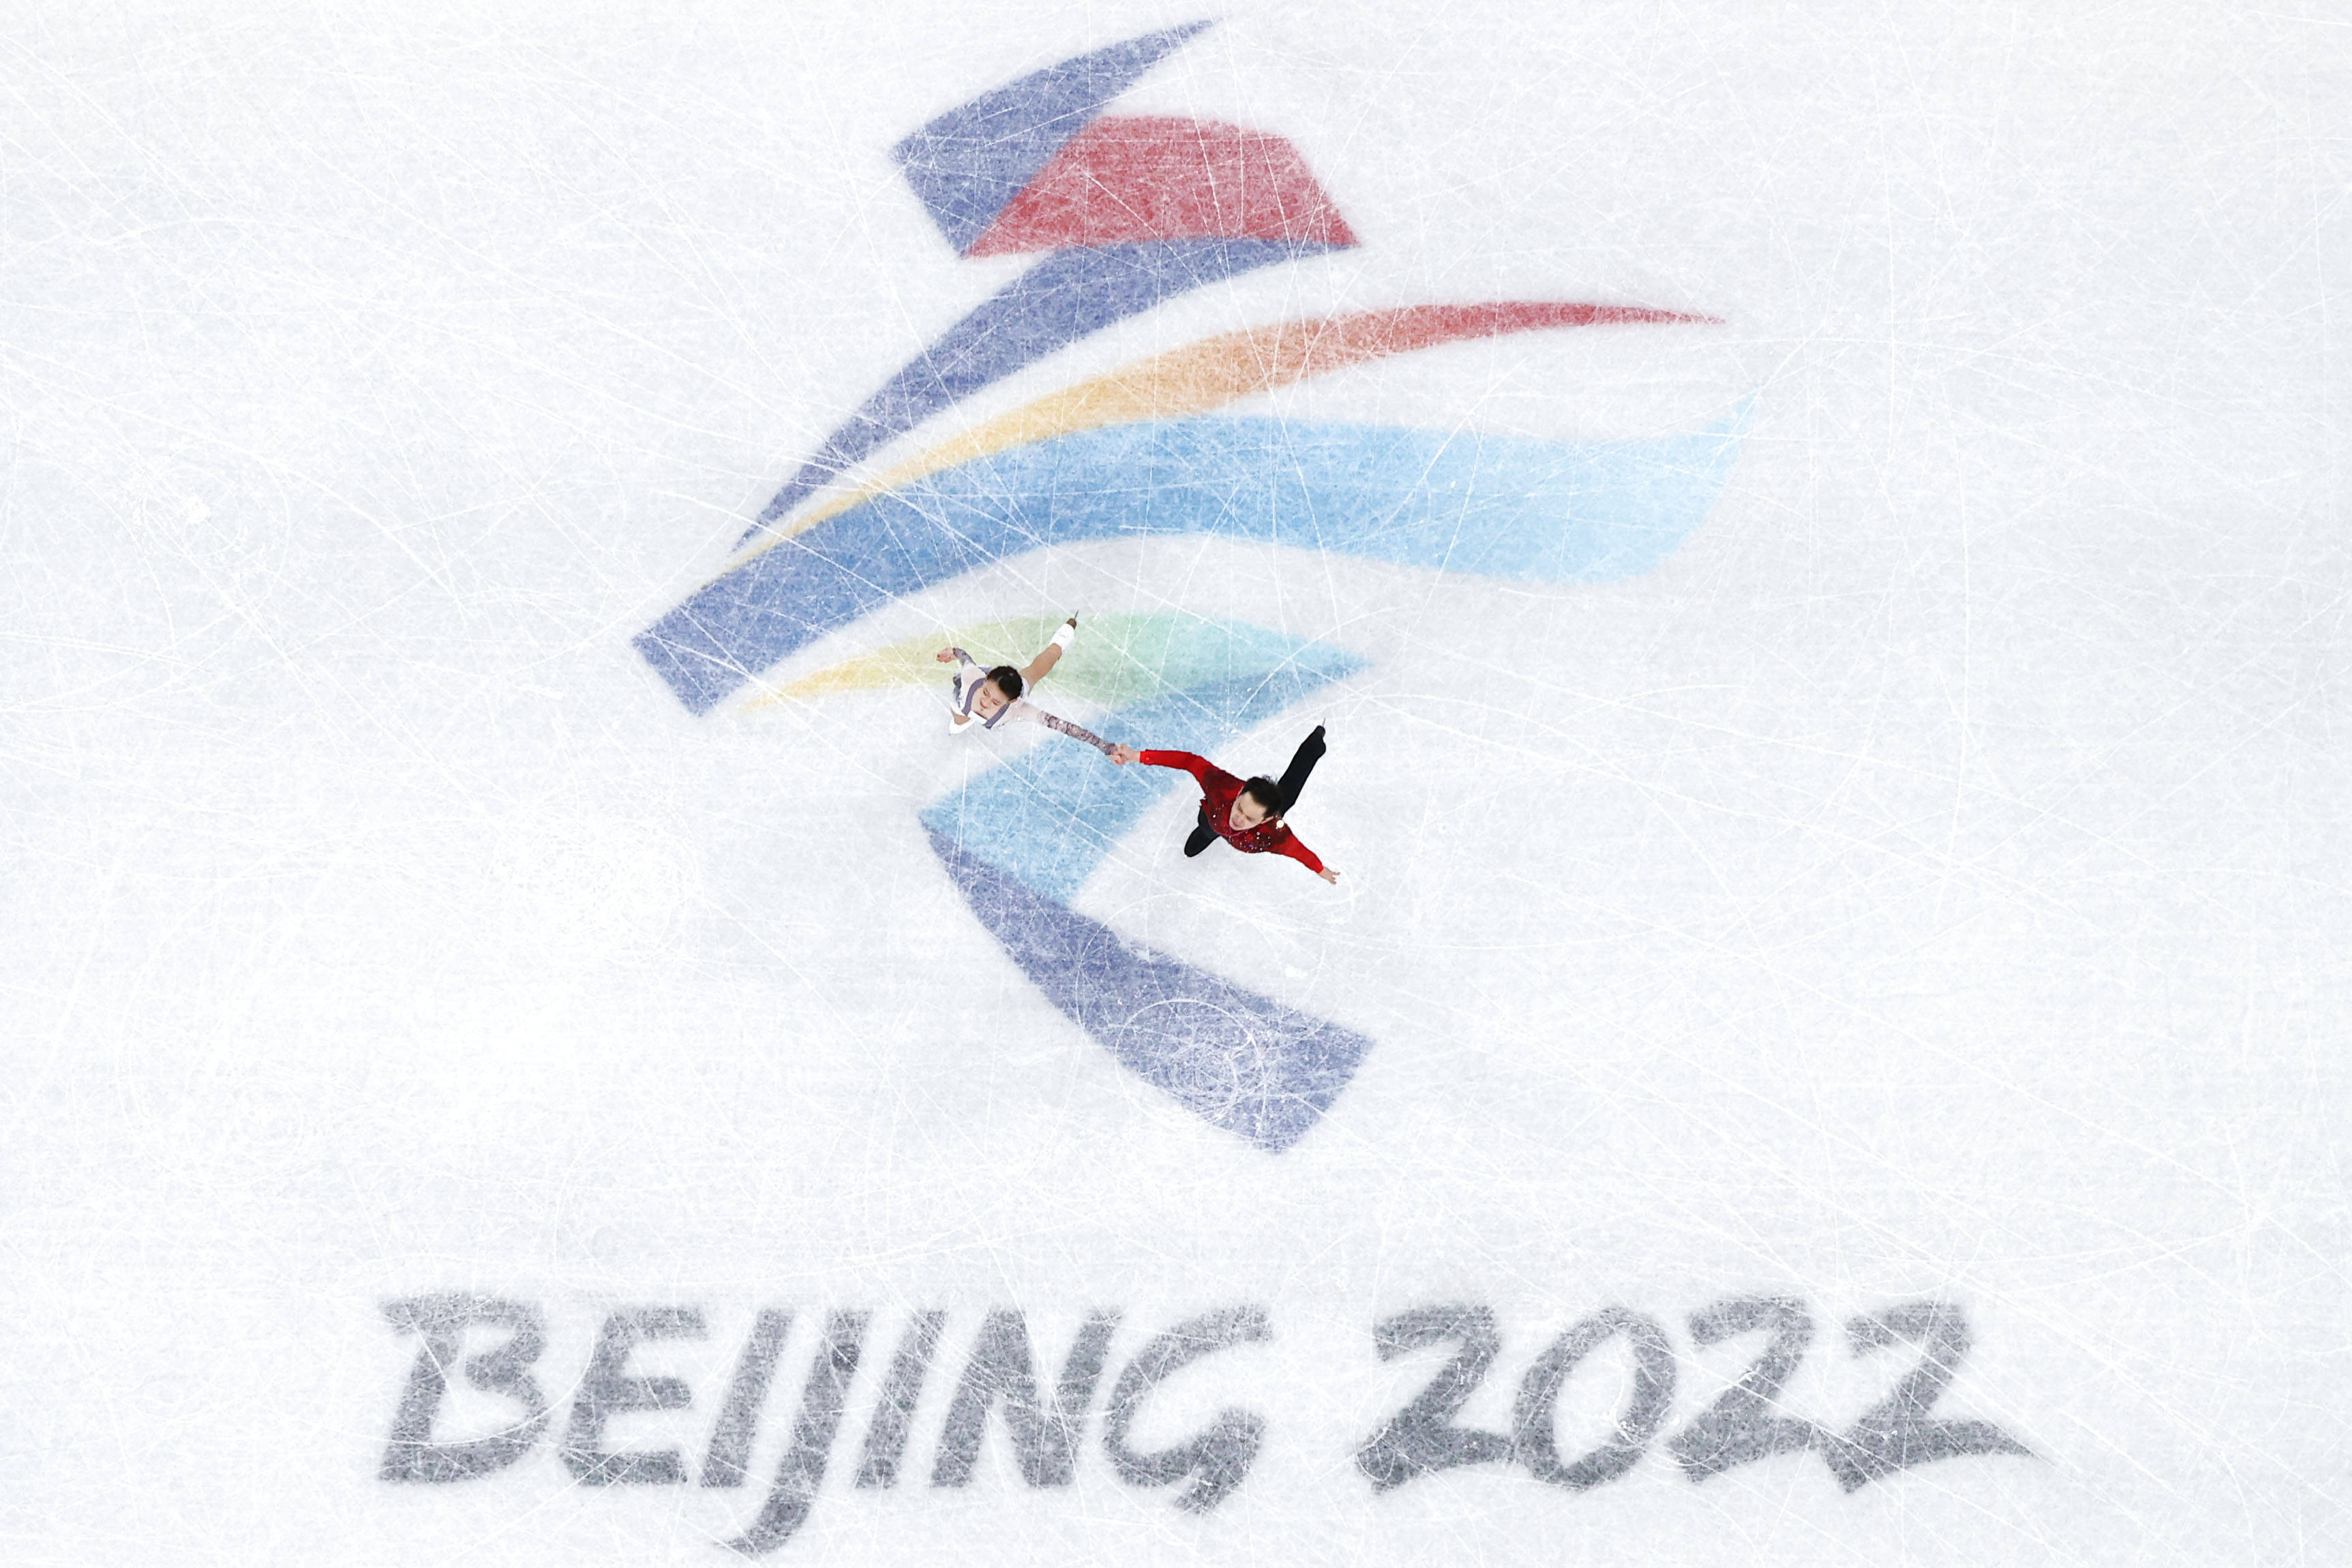 当日,北京2022年冬奥会花样滑冰团体赛双人滑自由滑比赛在首都体育馆